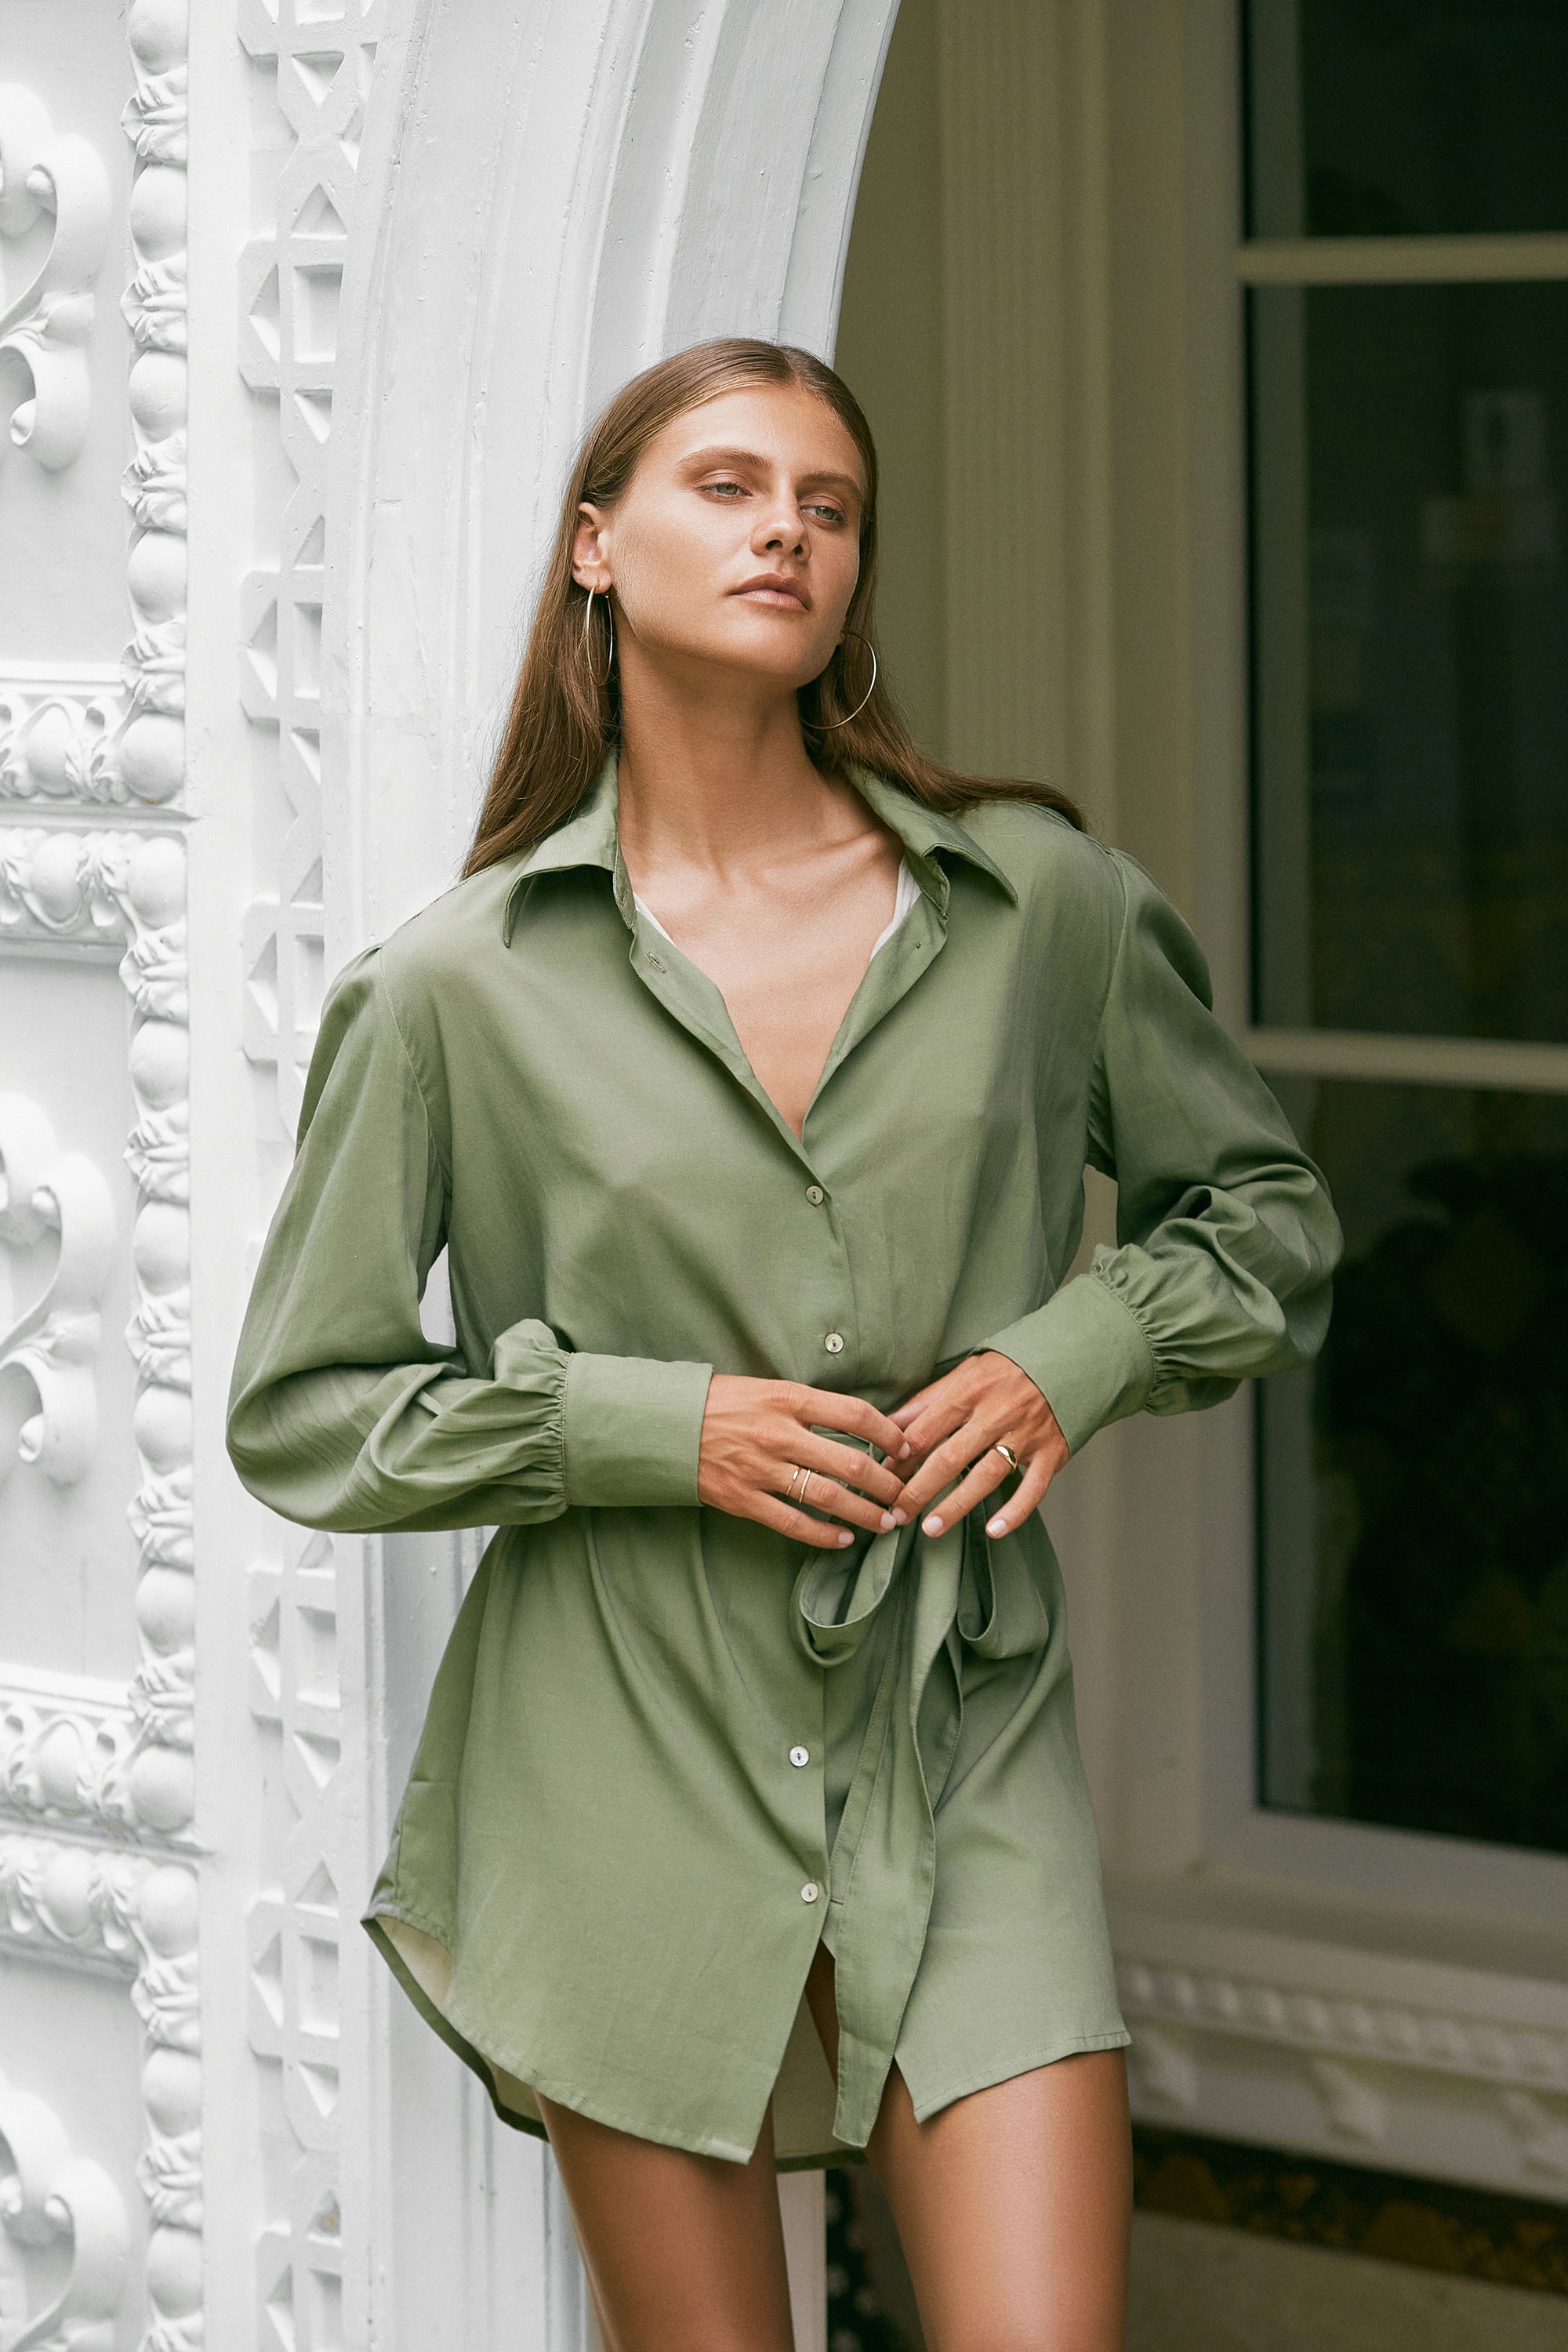 Woman modelling wearing silky-feel olive green shirt dress